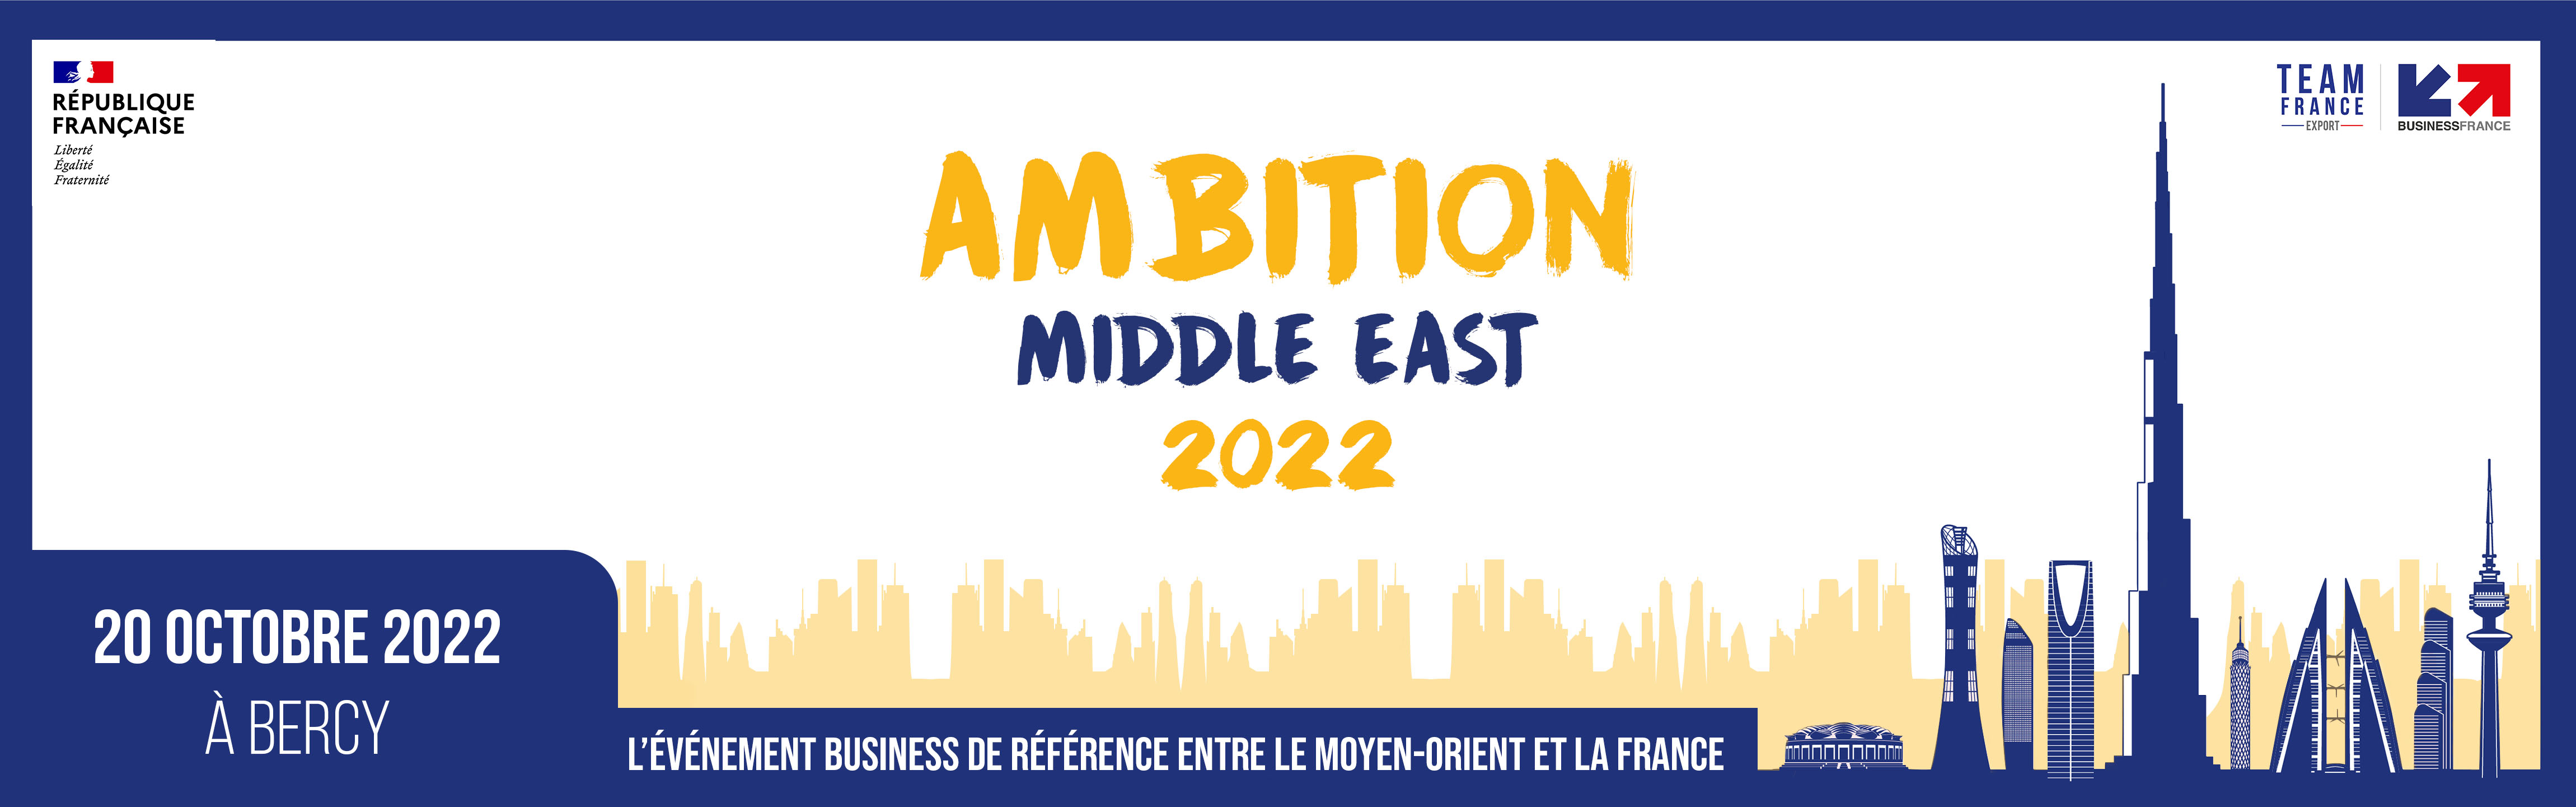 Ambition Middle East 2022 - Projetez-vous sur l'export au Moyen Orient